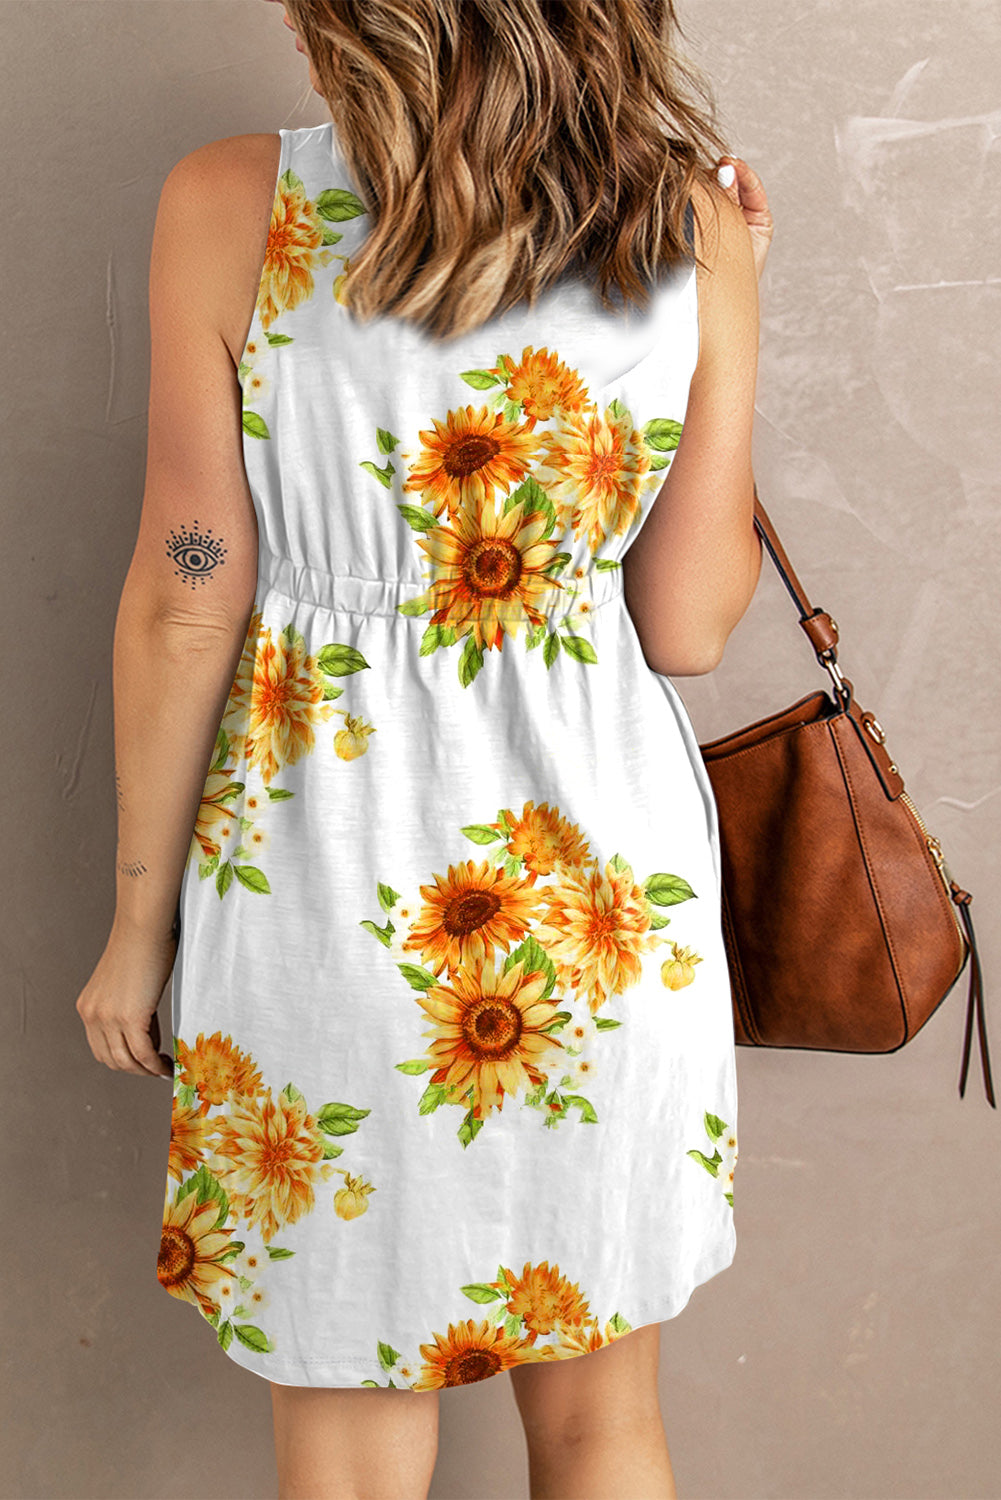 Sunflower Print Button Down Sleeveless Dress Trends